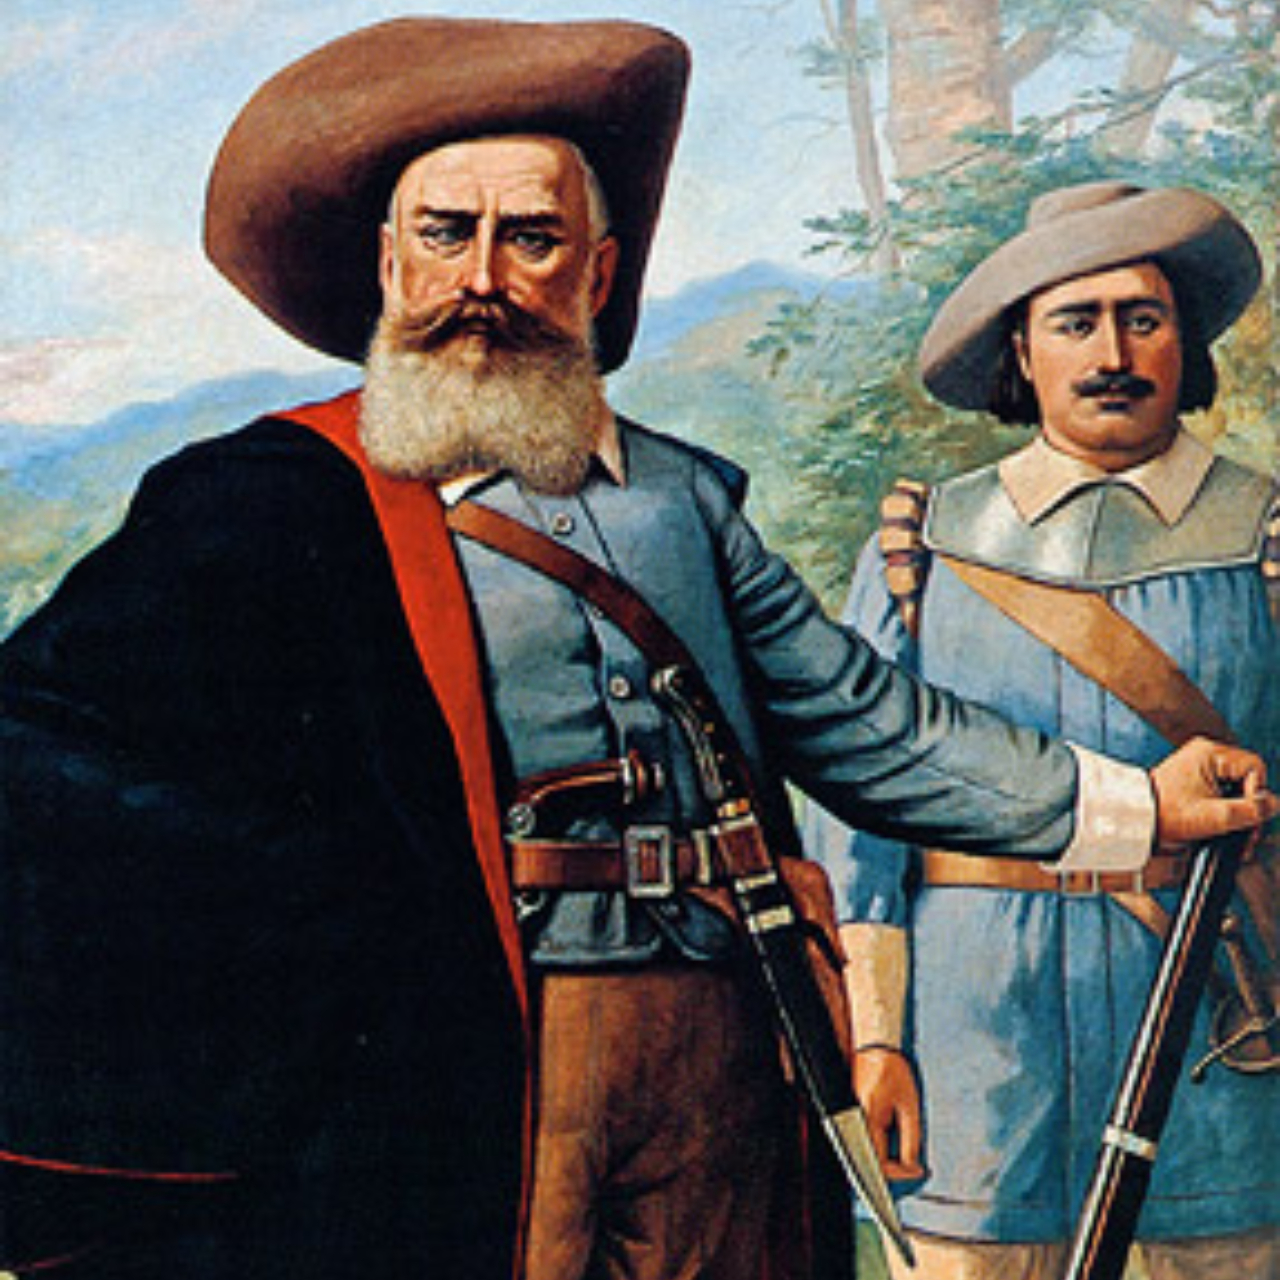 Retrato do bandeirante Domingos Jorge Velho